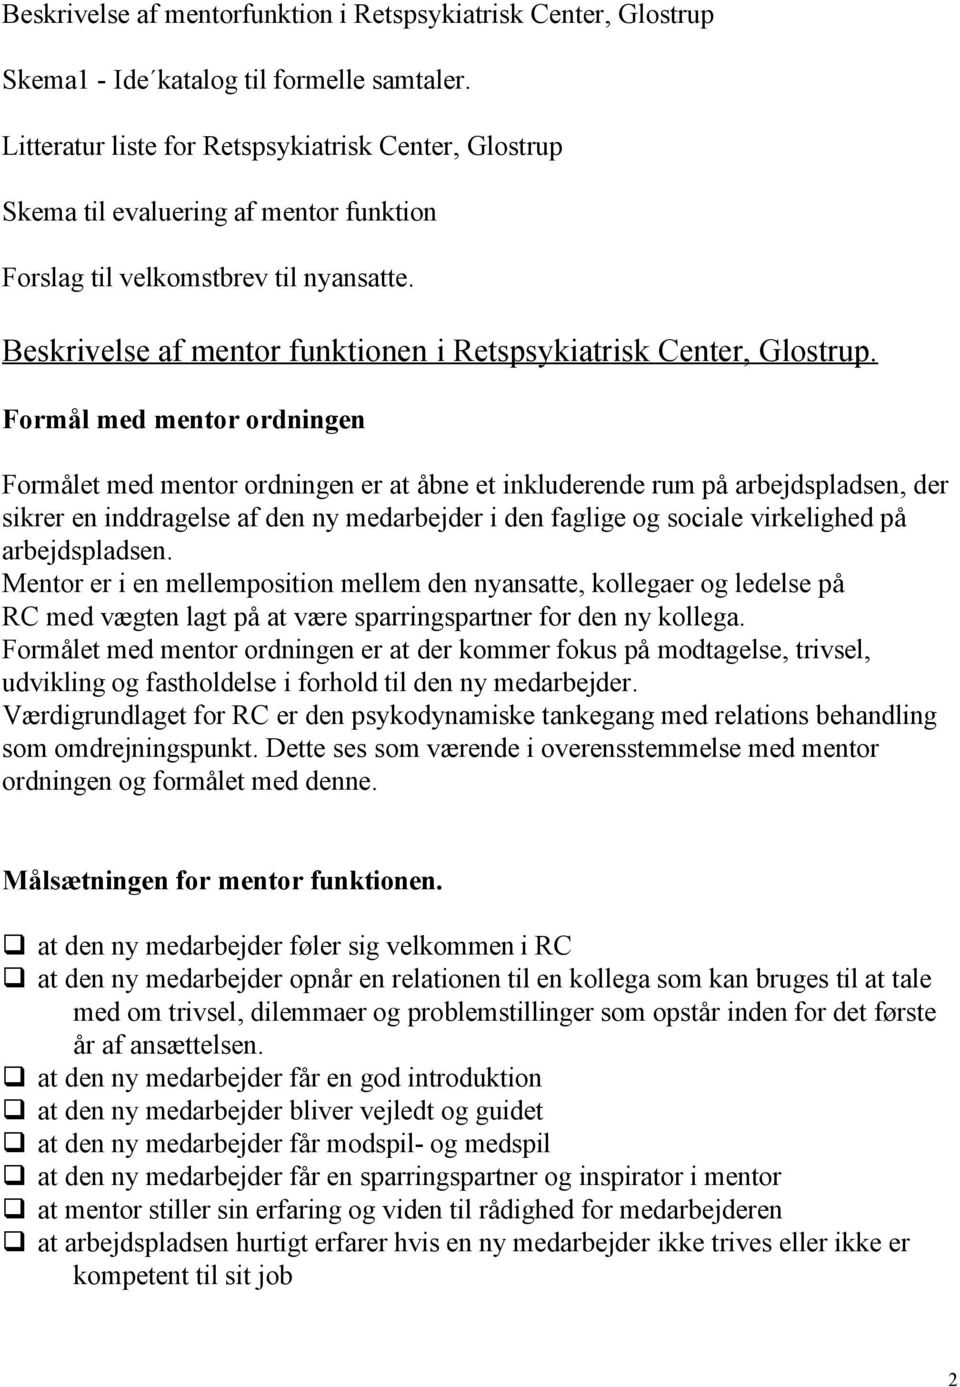 Beskrivelse af mentor funktionen i Retspsykiatrisk Center, Glostrup.